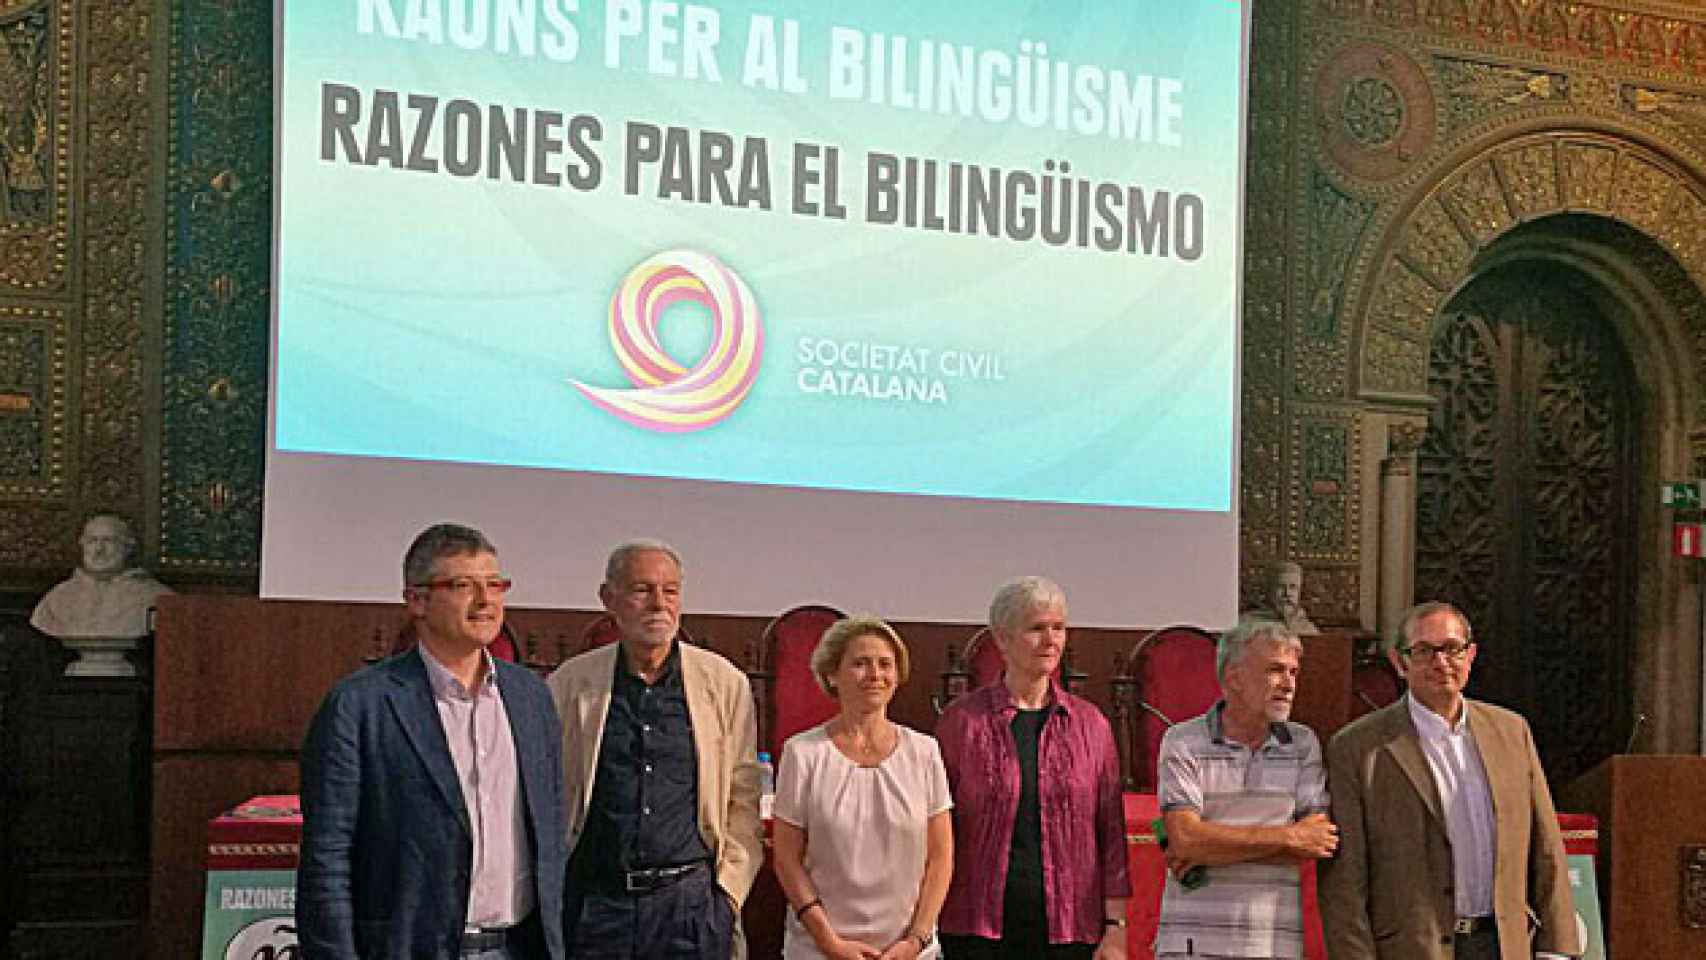 Joaquim Coll, Eduardo Mendoza, Nuria Plaza, Inger Enkvist, Ignacio Morgado y Rafael Arenas, en el acto a favor del bilingüismo celebrado este jueves por SCC / SCC